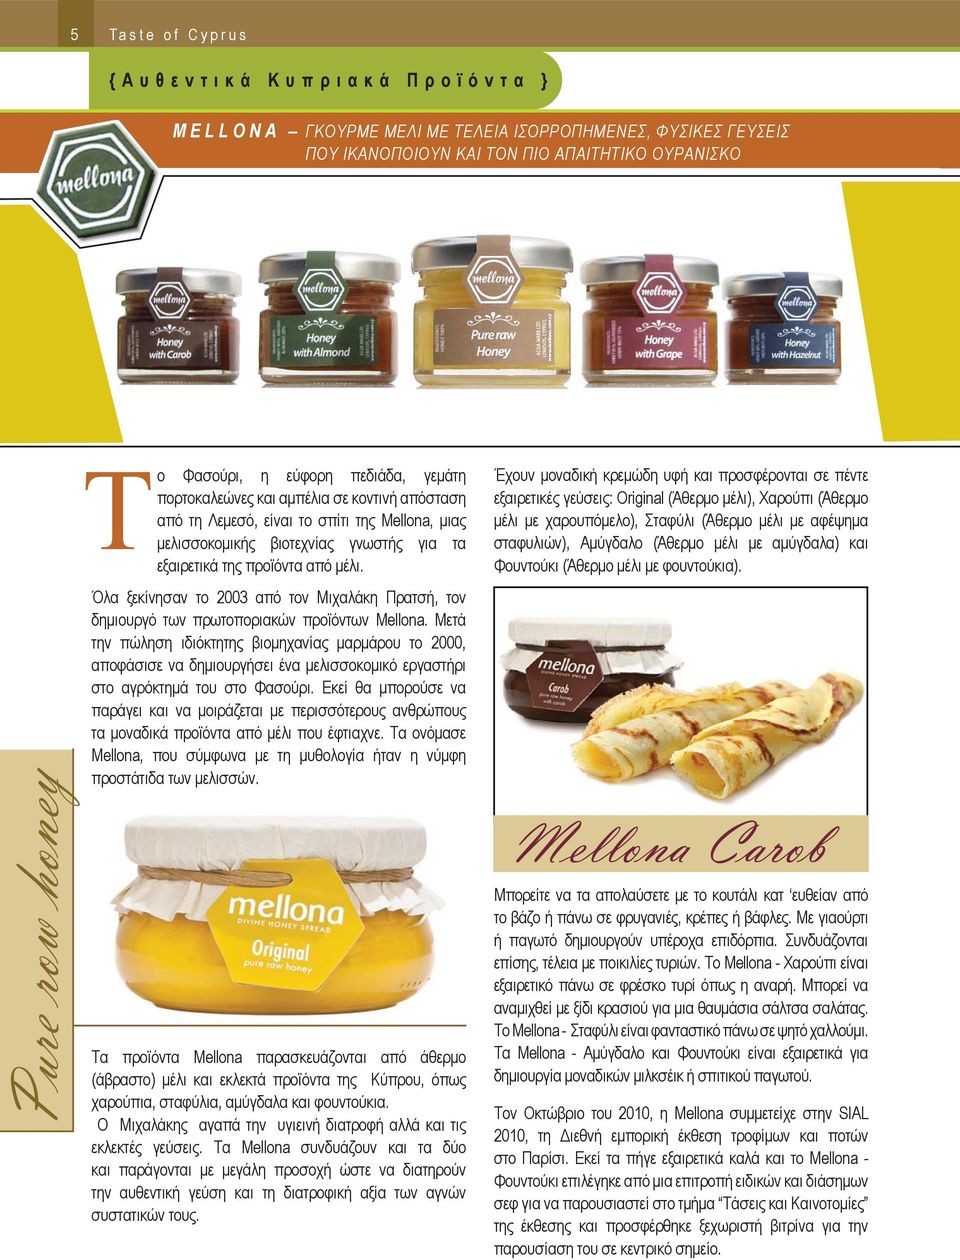 προϊόντα από μέλι. Όλα ξεκίνησαν το 2003 από τον Μιχαλάκη Πρατσή, τον δημιουργό των πρωτοποριακών προϊόντων Mellona.